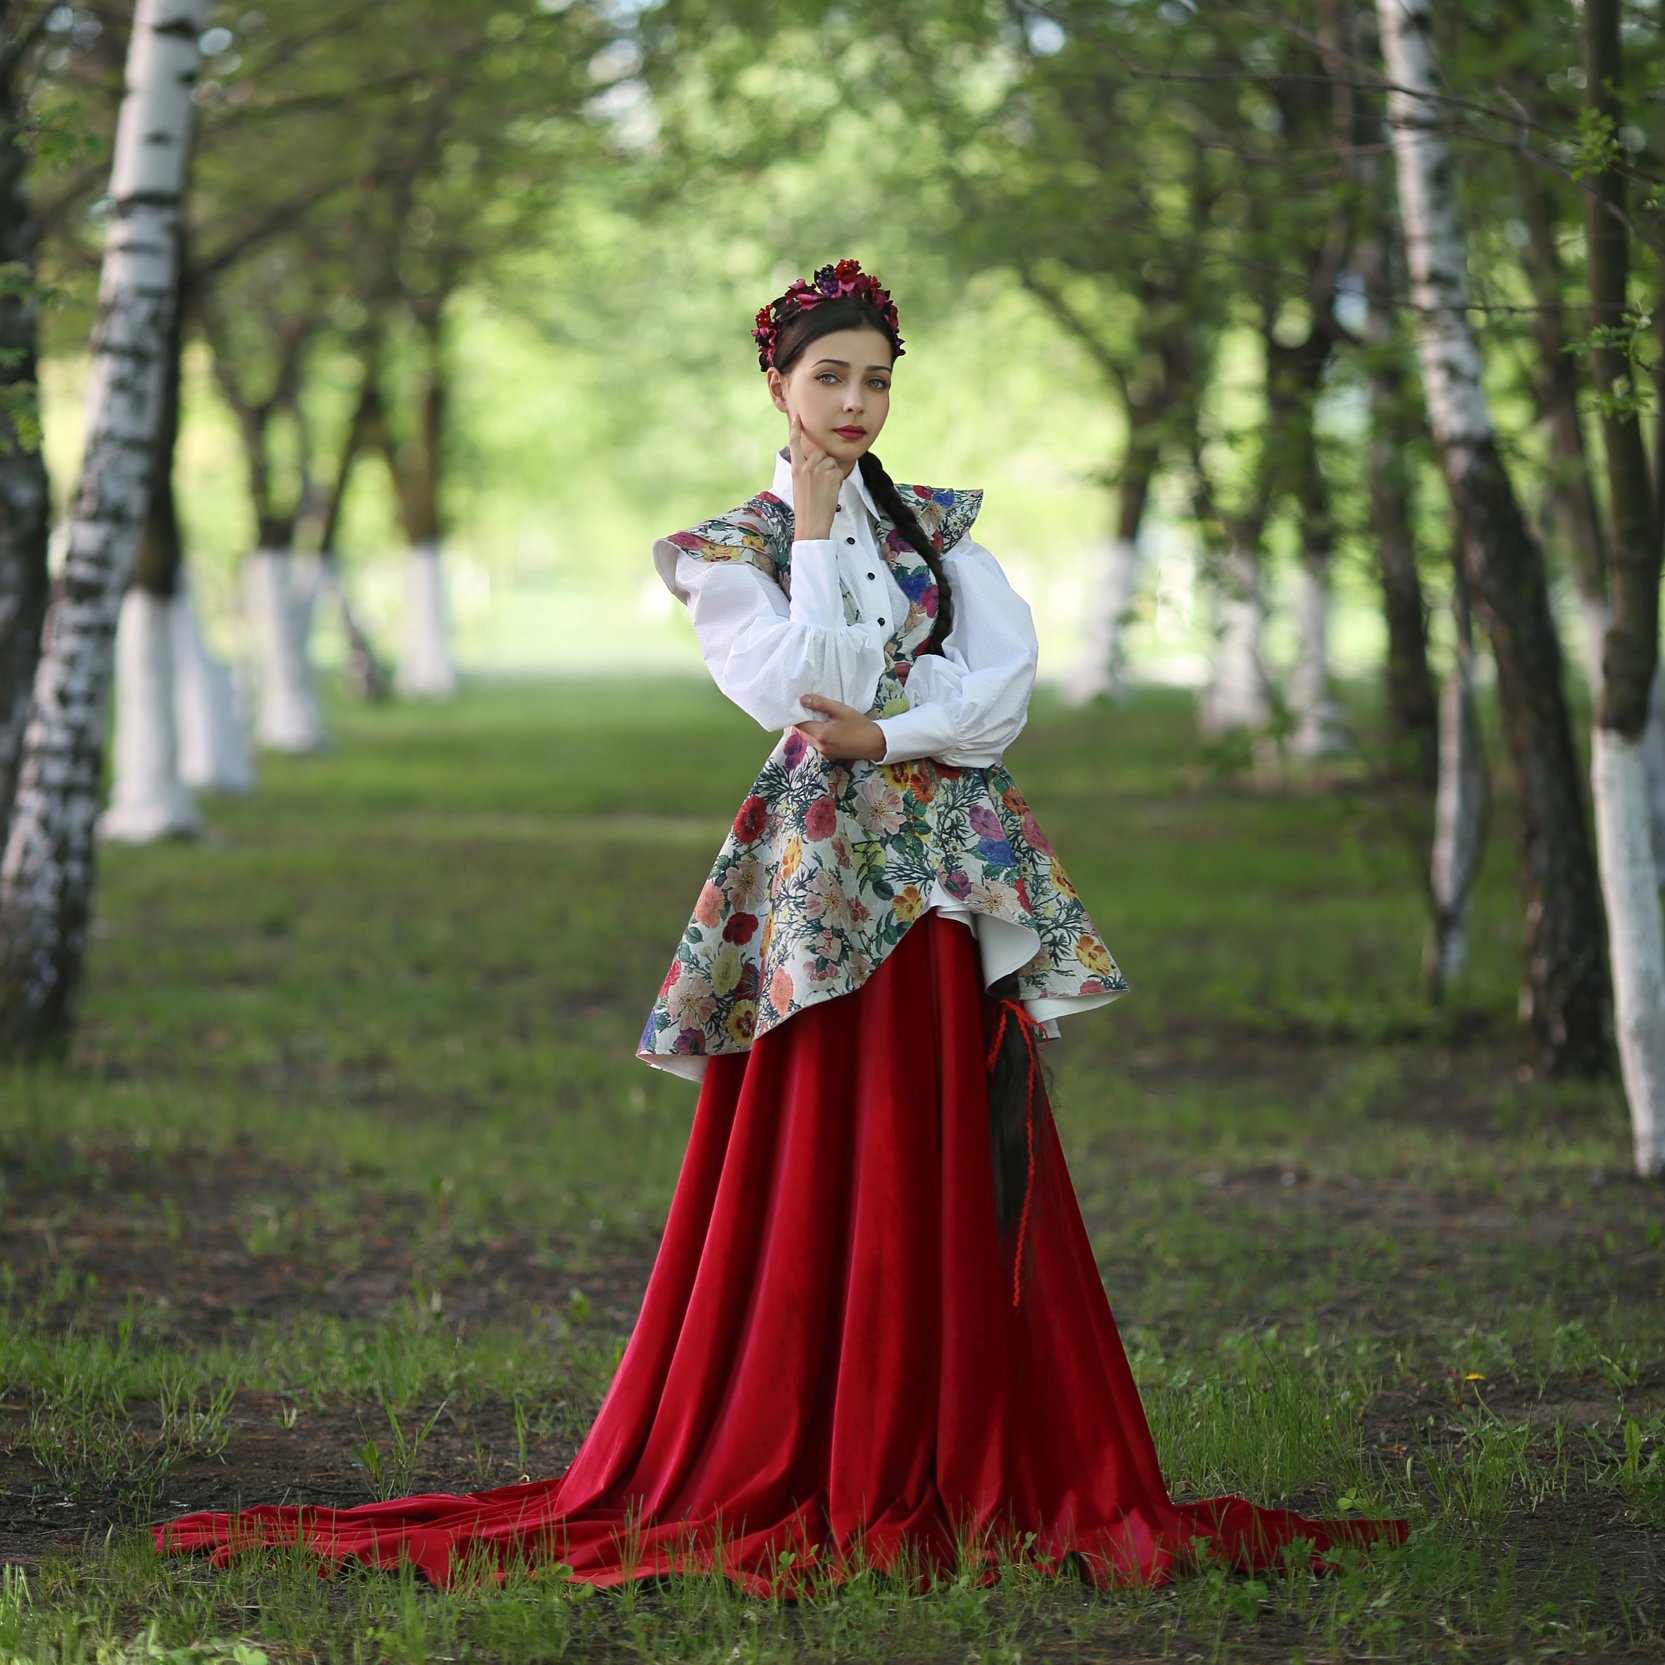 русская береза, березовая аллея, русский народный костюм, Ирина Голубятникова